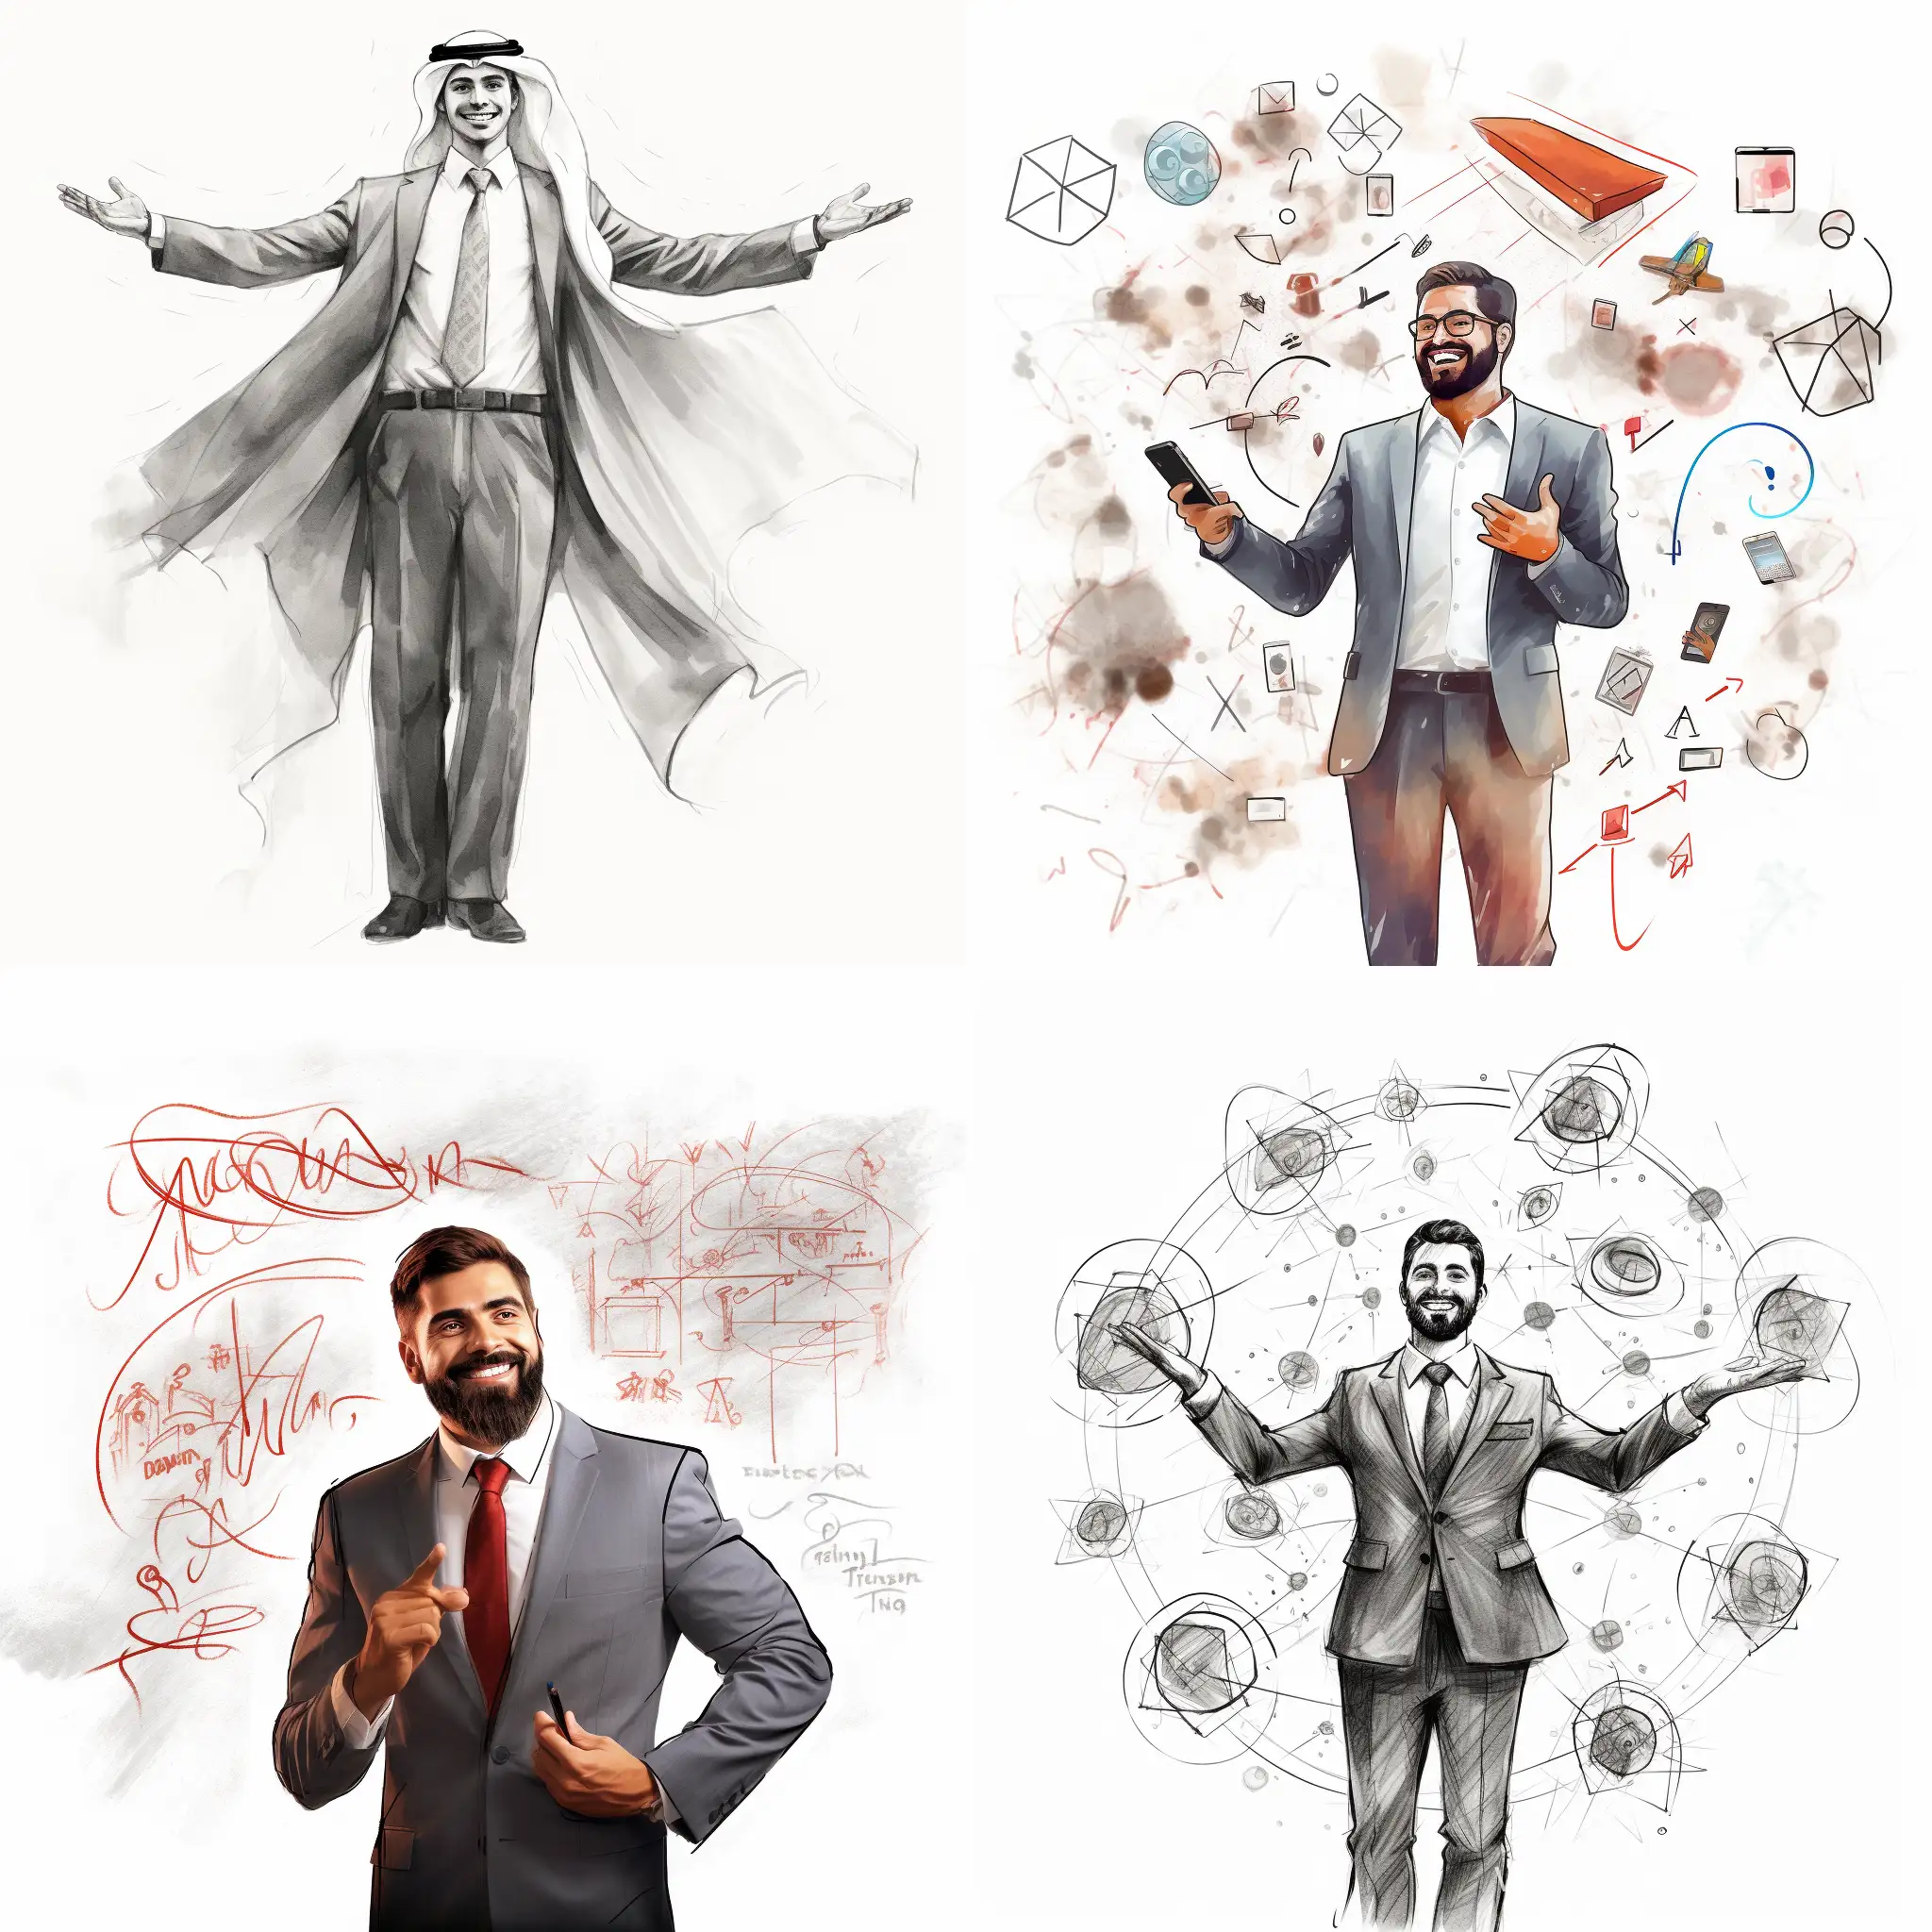 Smiling-Arabic-Businessman-Gaining-Social-Media-Followers-Chalk-Sketch-Style